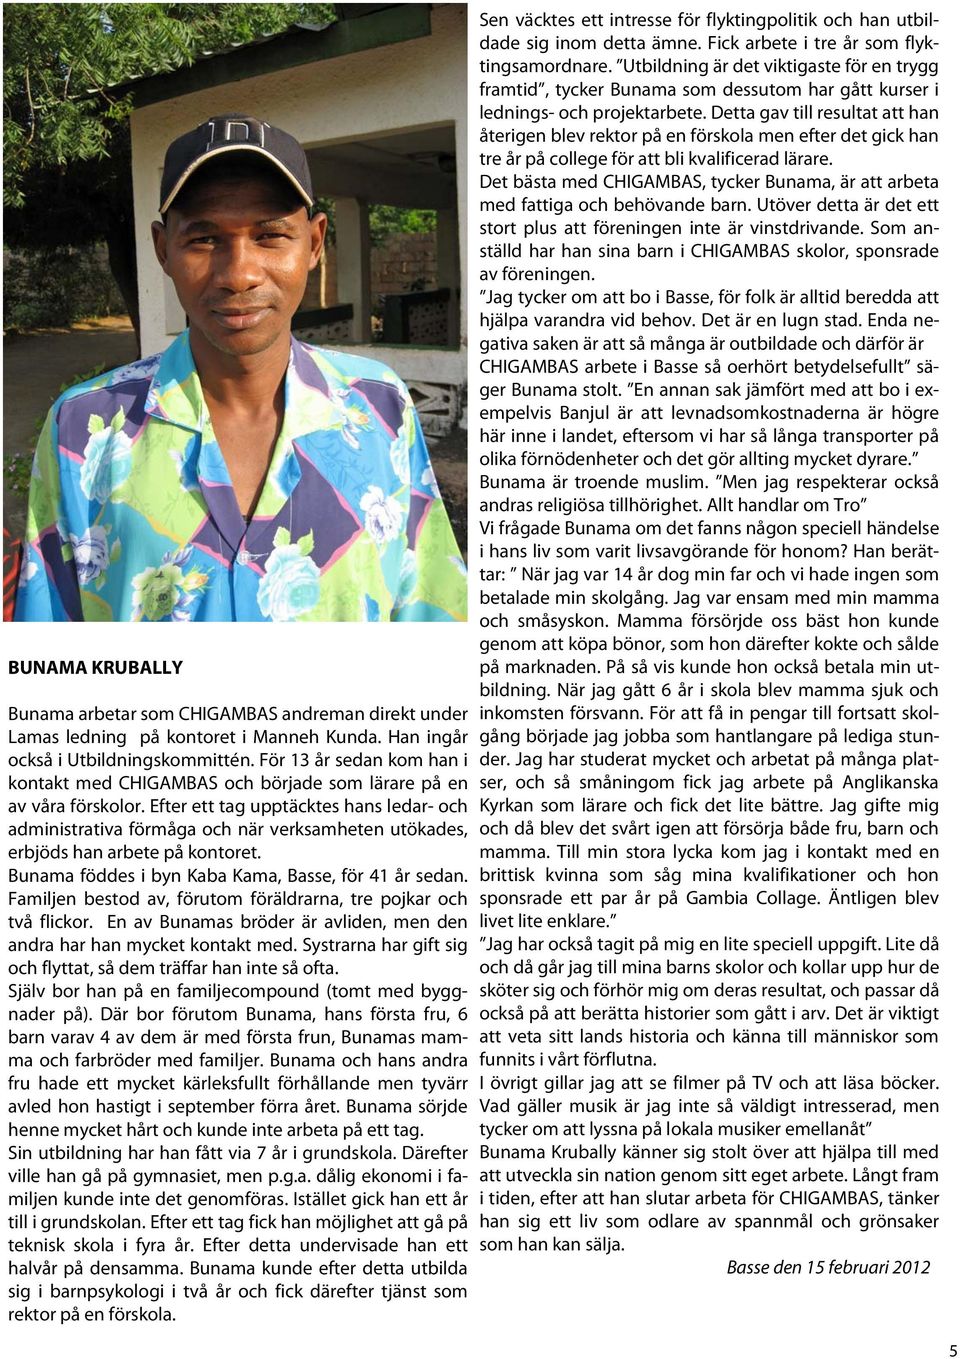 Efter ett tag upptäcktes hans ledar- och administrativa förmåga och när verksamheten utökades, erbjöds han arbete på kontoret. Bunama föddes i byn Kaba Kama, Basse, för 41 år sedan.